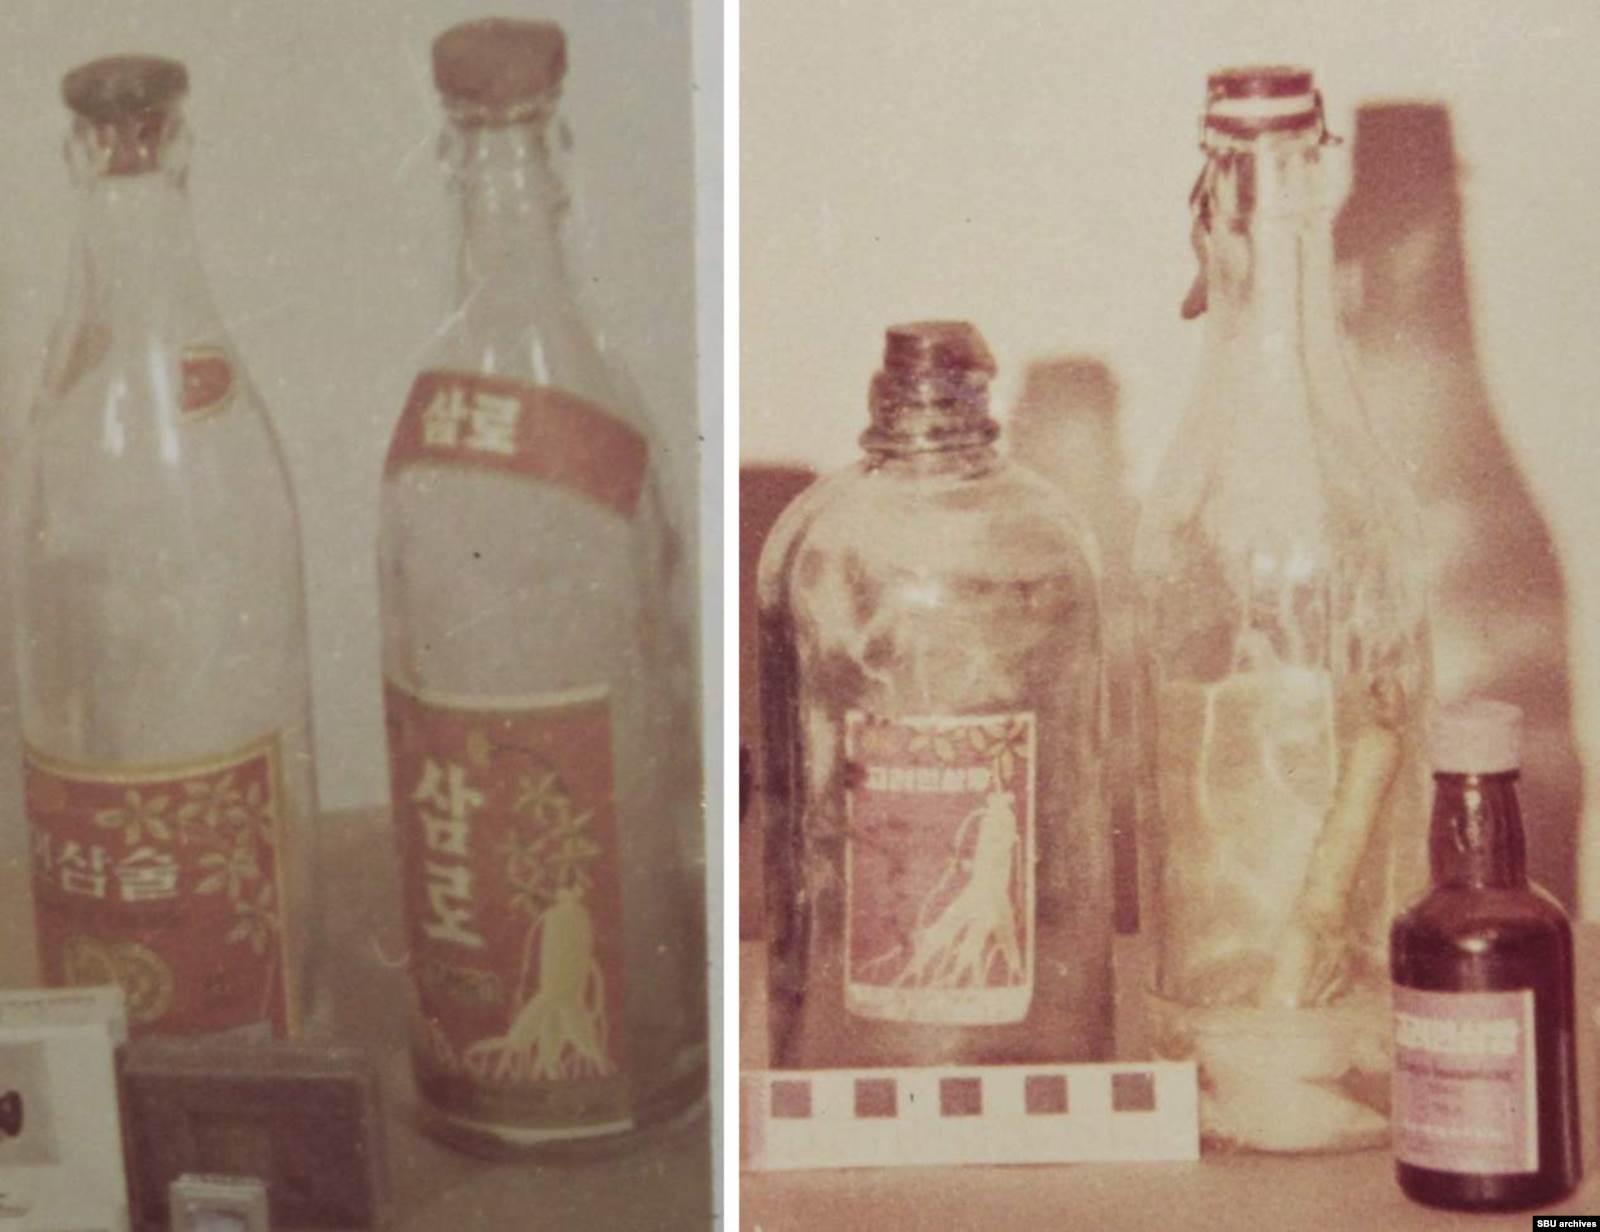 Бутылки из-под подаренных корейцами женьшеневой водки и экстракта. Фото из уголовного дела